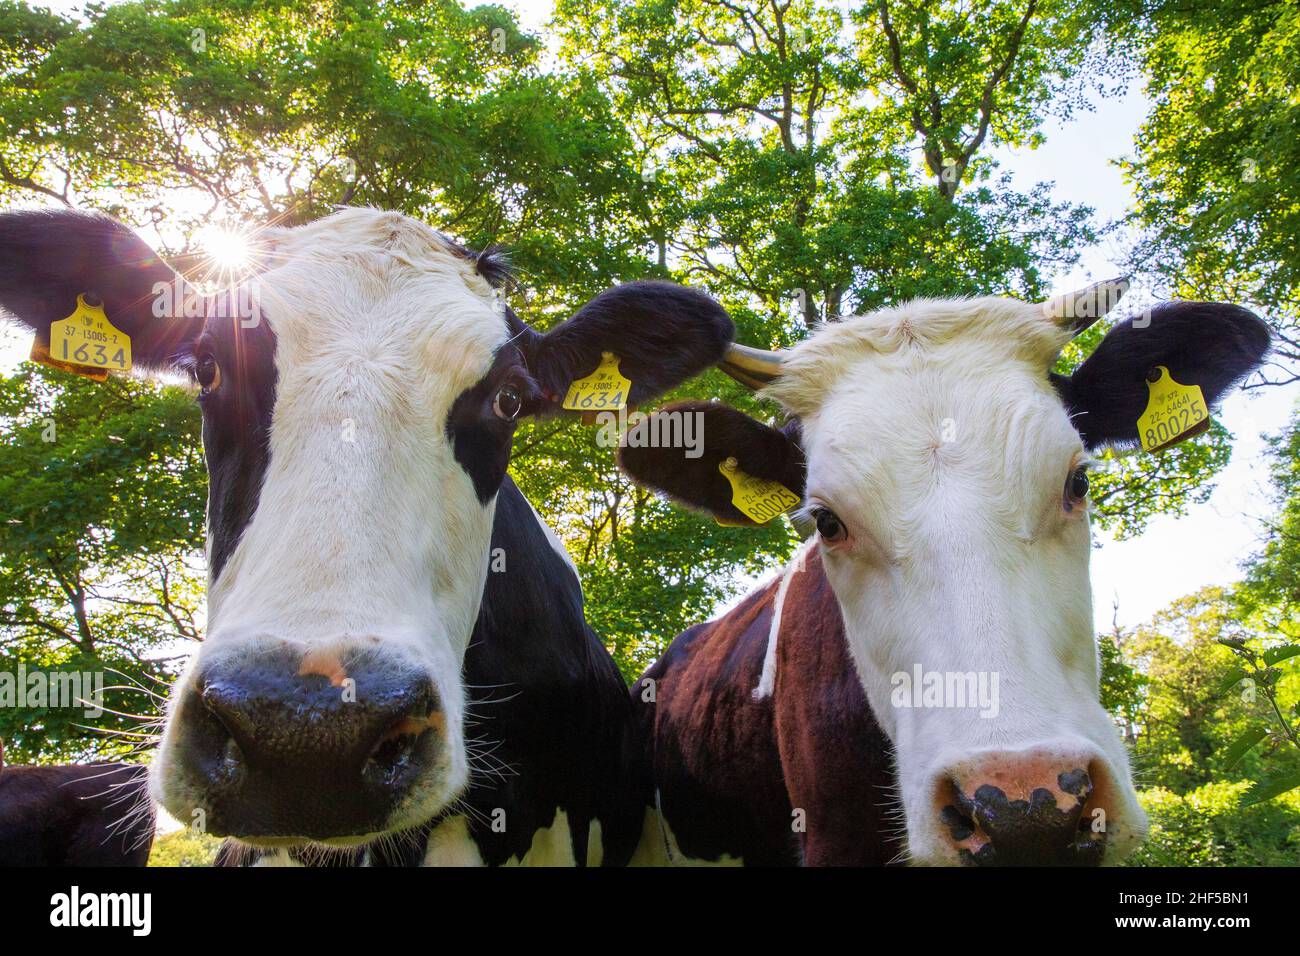 irish cattle Stock Photo